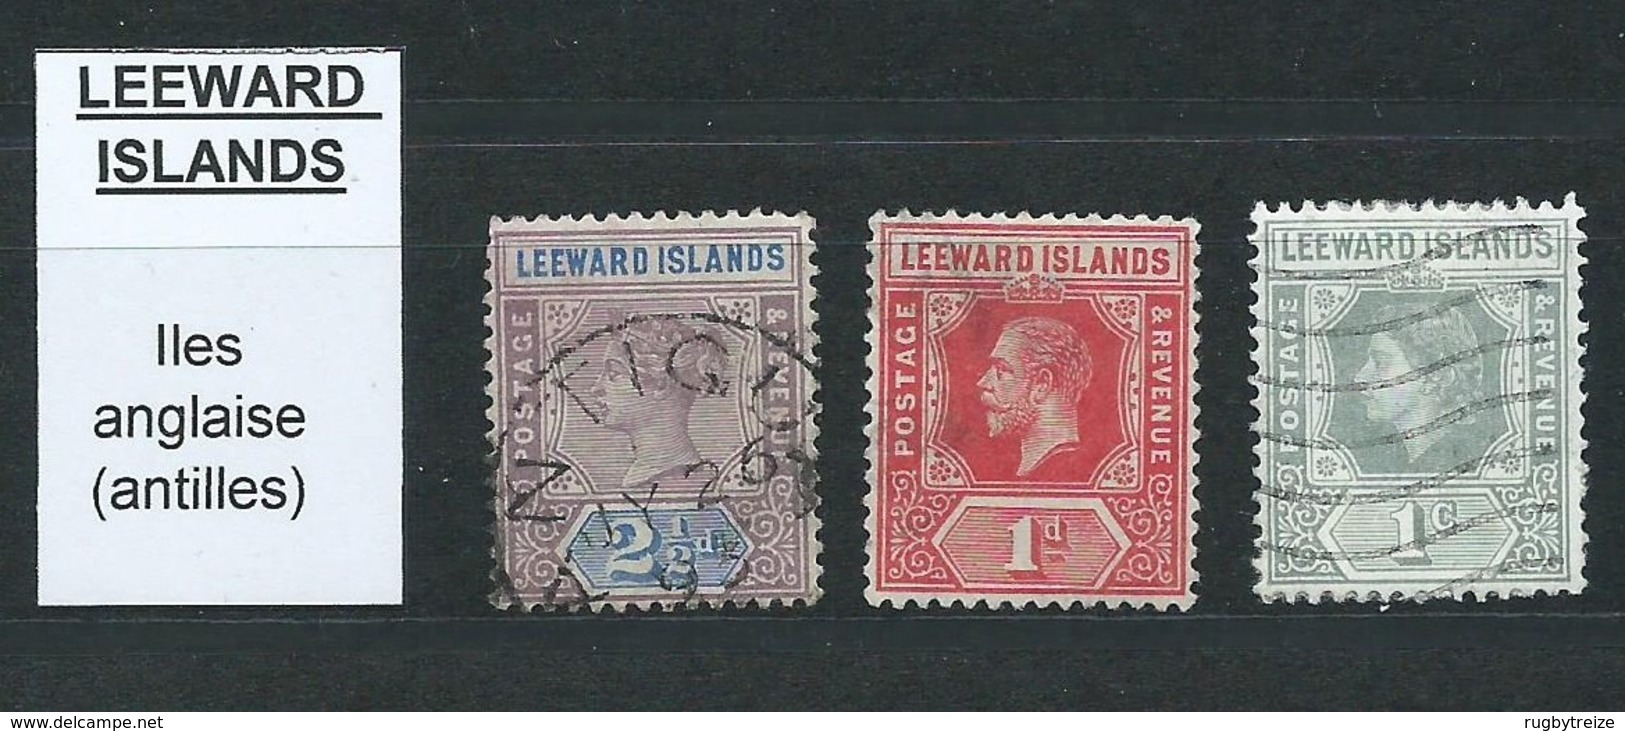 3208 - Lot De 3 Timbres LEEWARD ISLANDS - Leeward  Islands